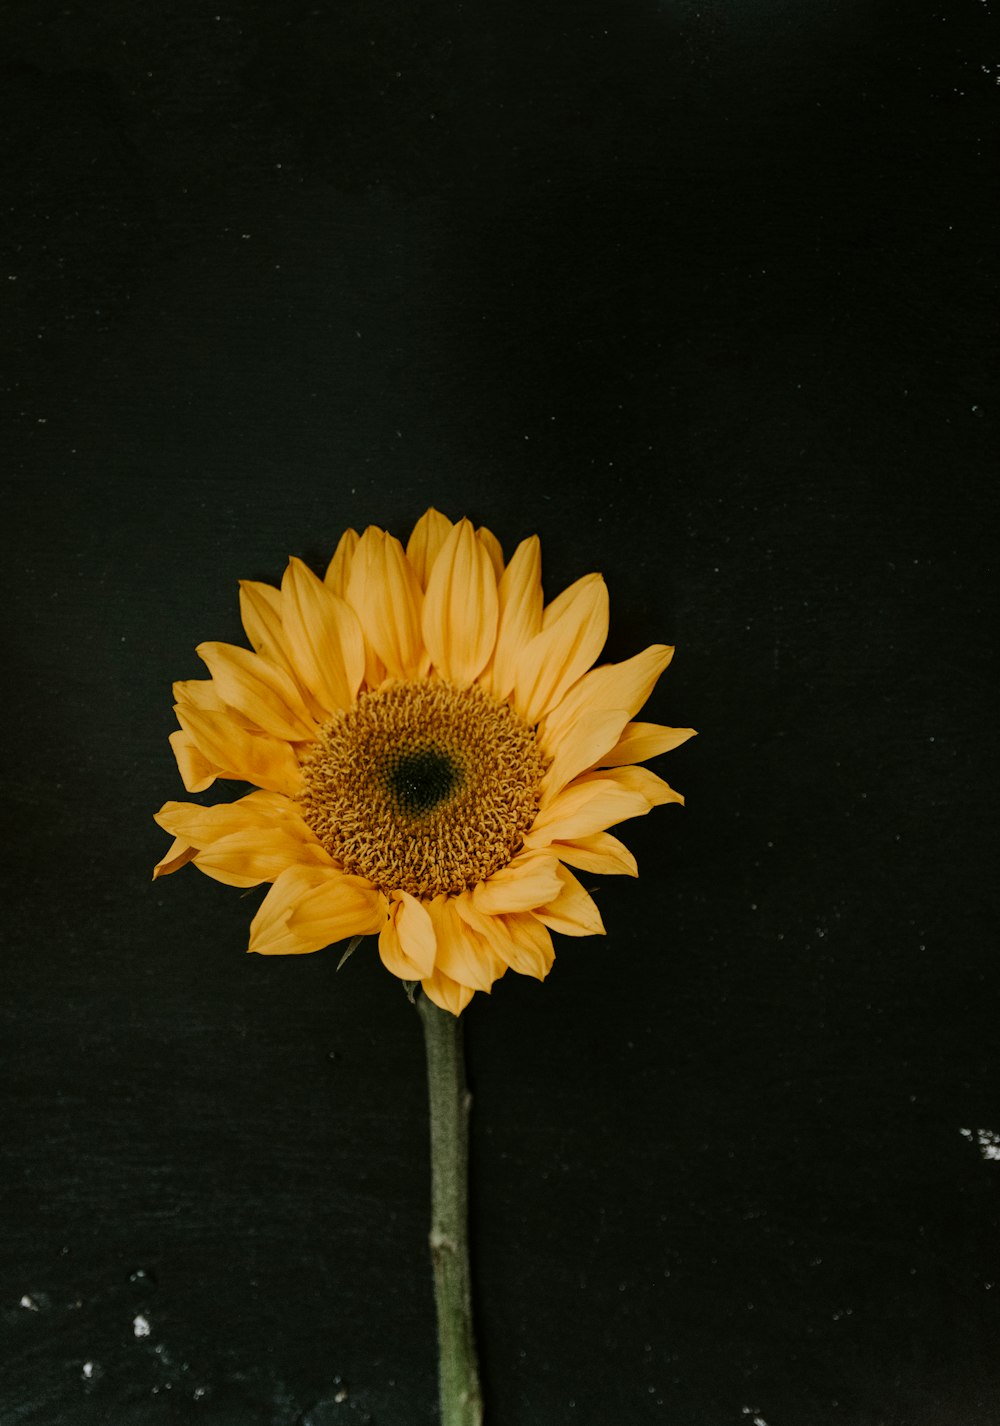 yellow sunflower on black background photo – Free Flower Image on Unsplash